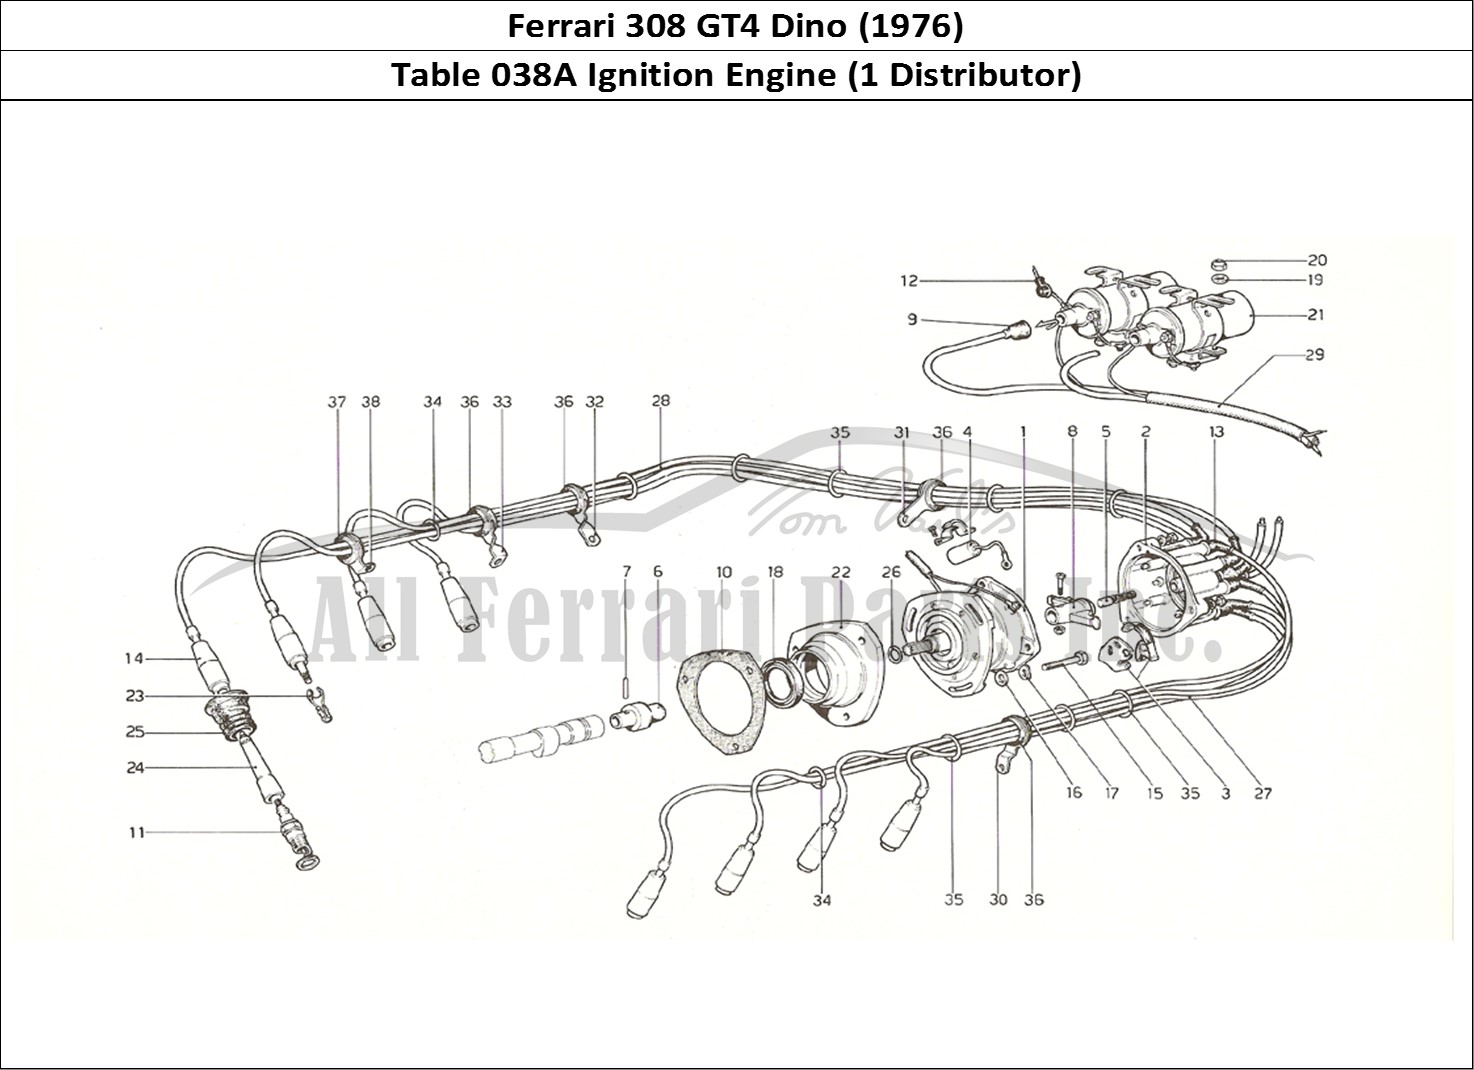 Ferrari Parts Ferrari 308 GT4 Dino (1976) Page 038 Engine Ignition (1 distri